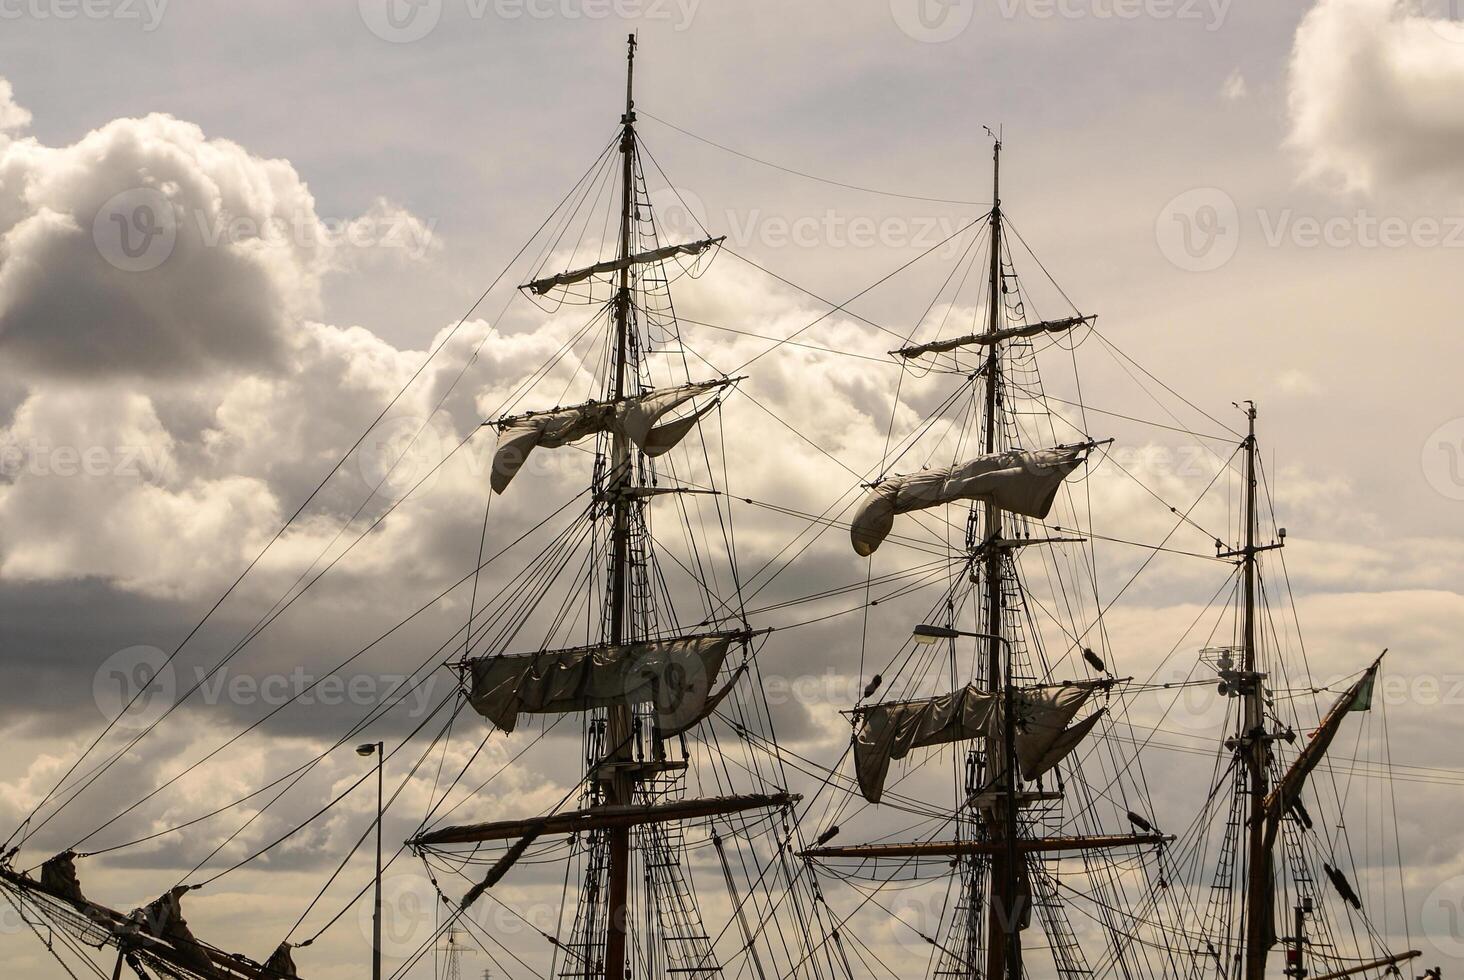 ampla mastro do a velho Navegando navio foto